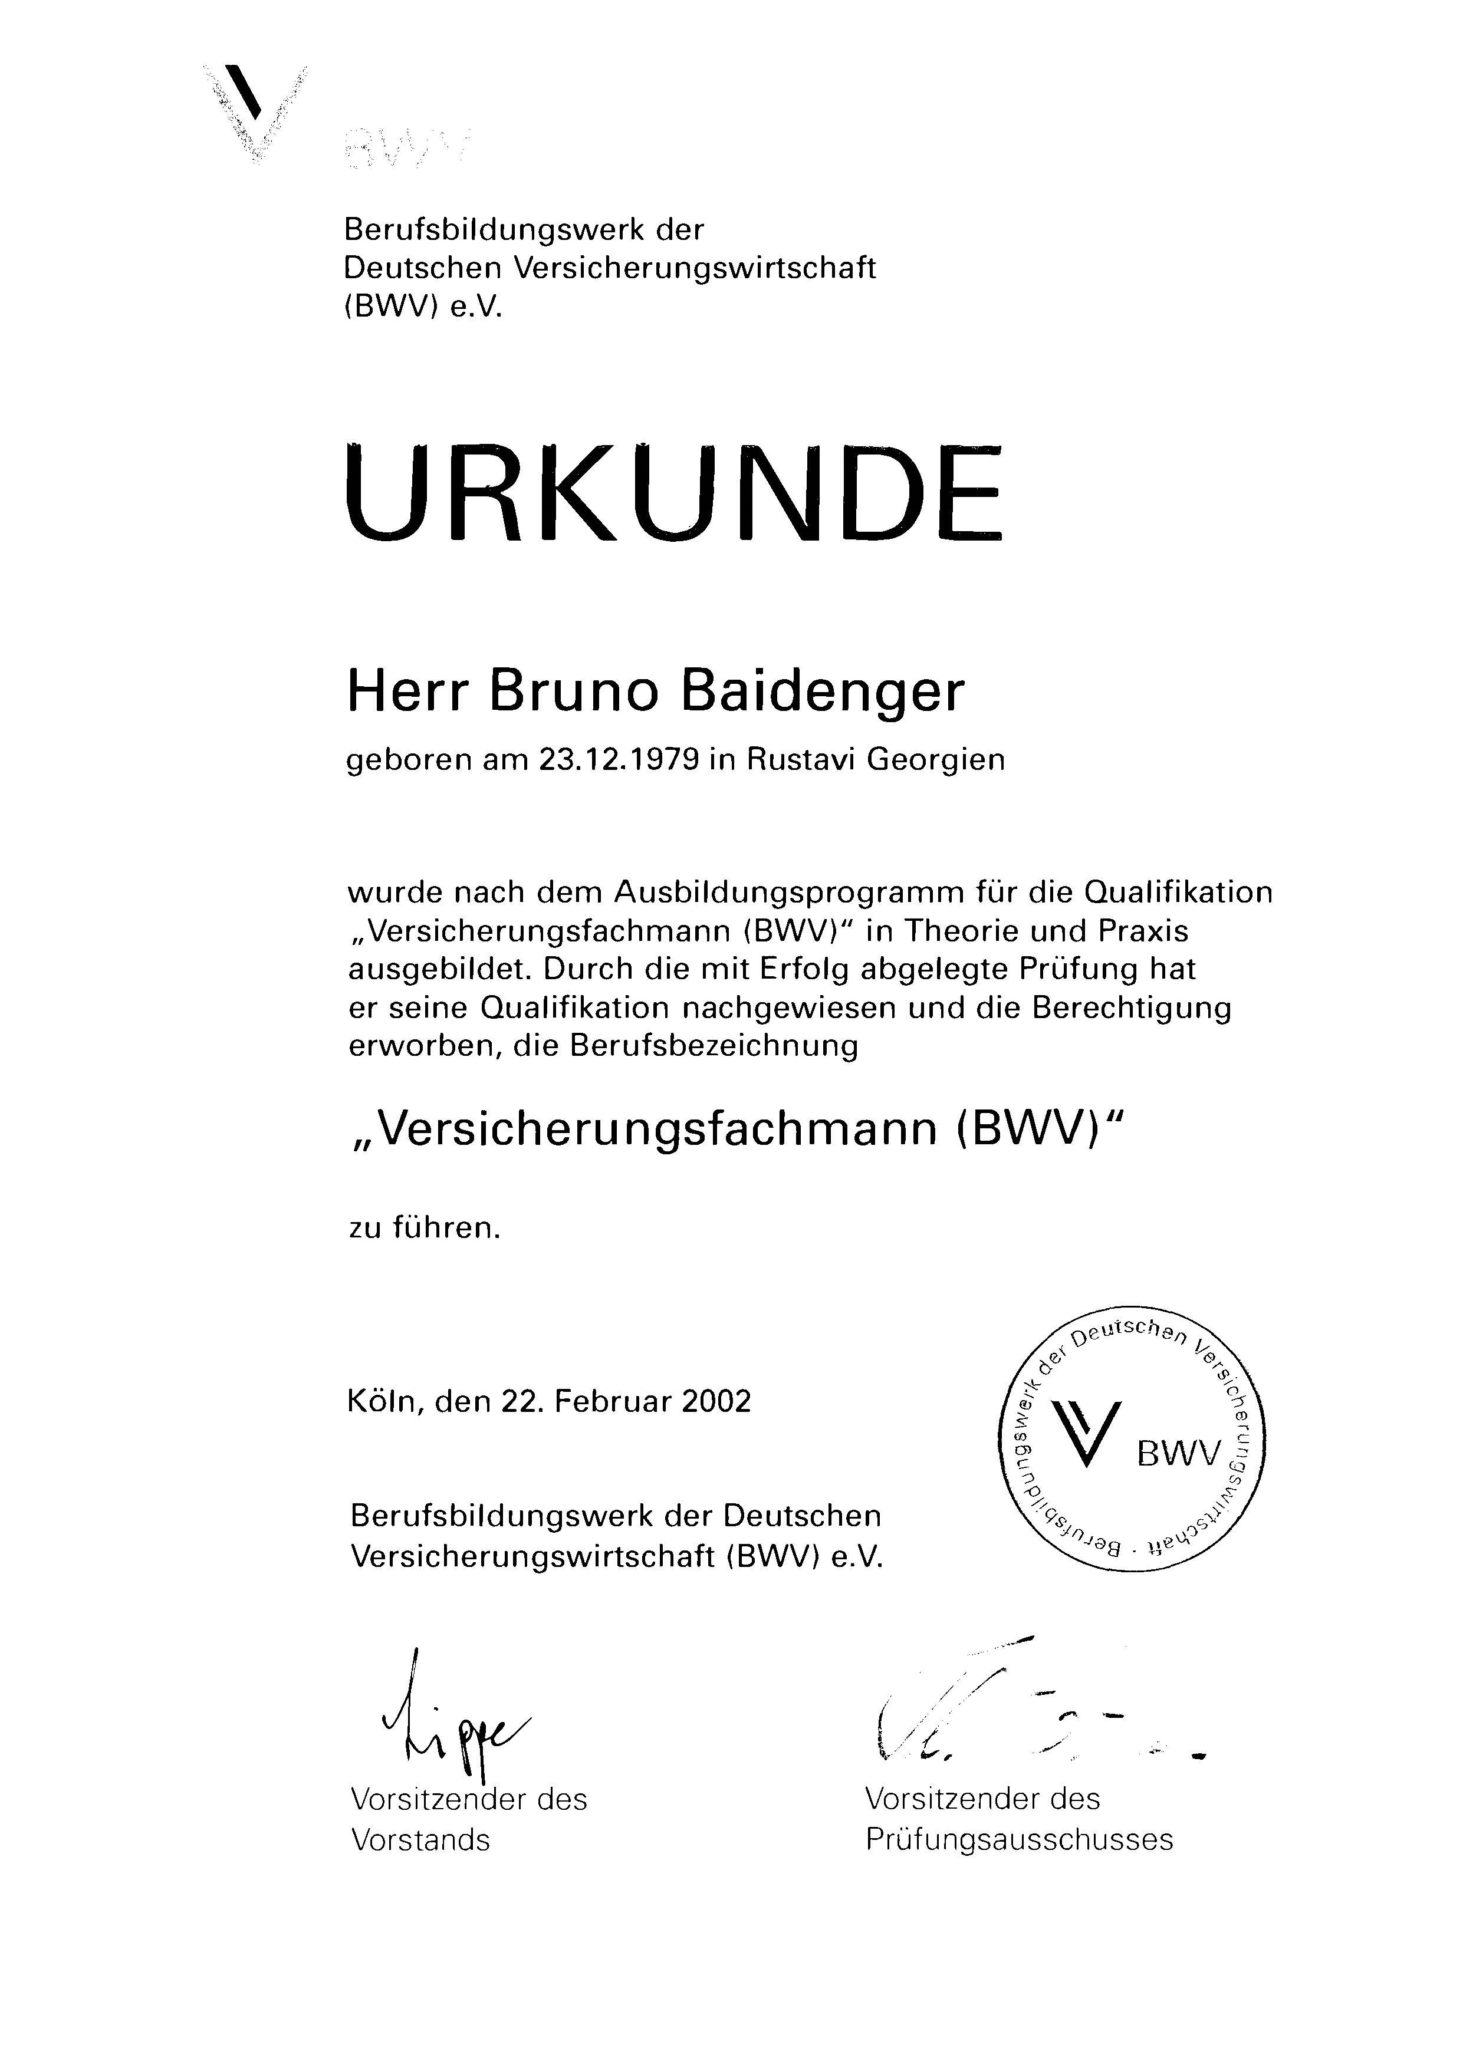 Urkunde Versicherungsfachmman (BWV), Finanzberater & Versicherungsmakler in Karlsruhe"